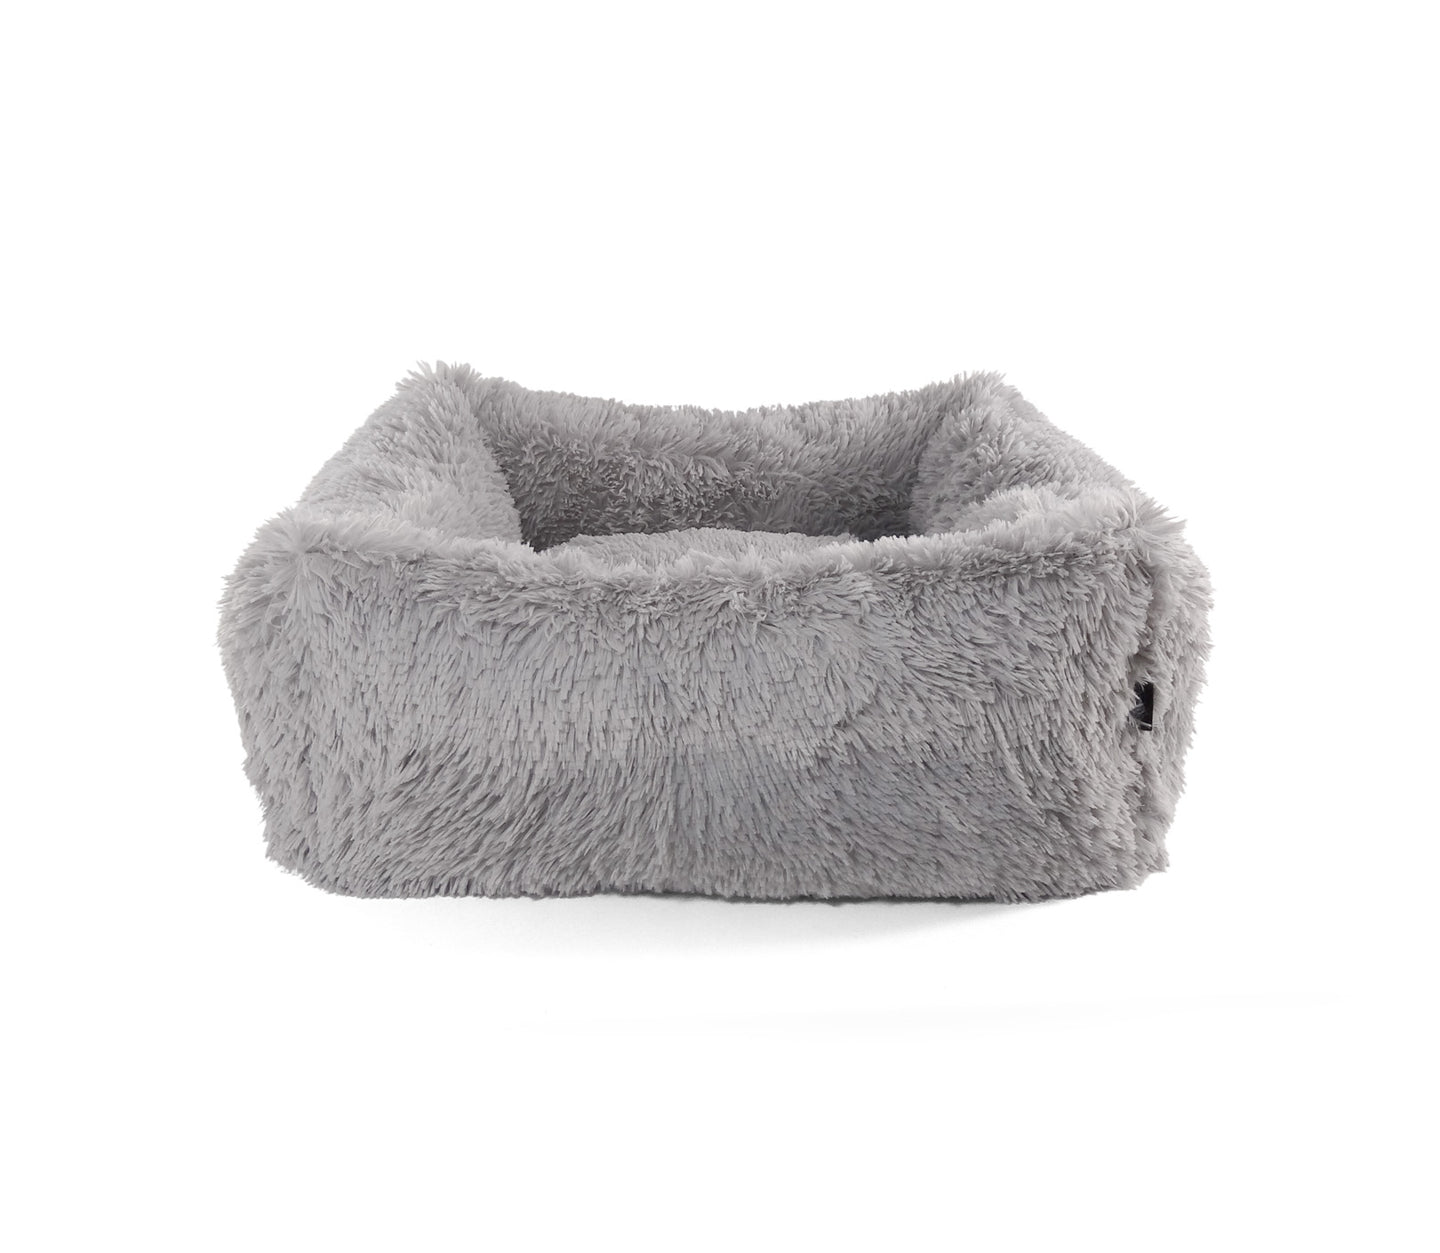 Super Soft Dog Lounge - Fluffy Design